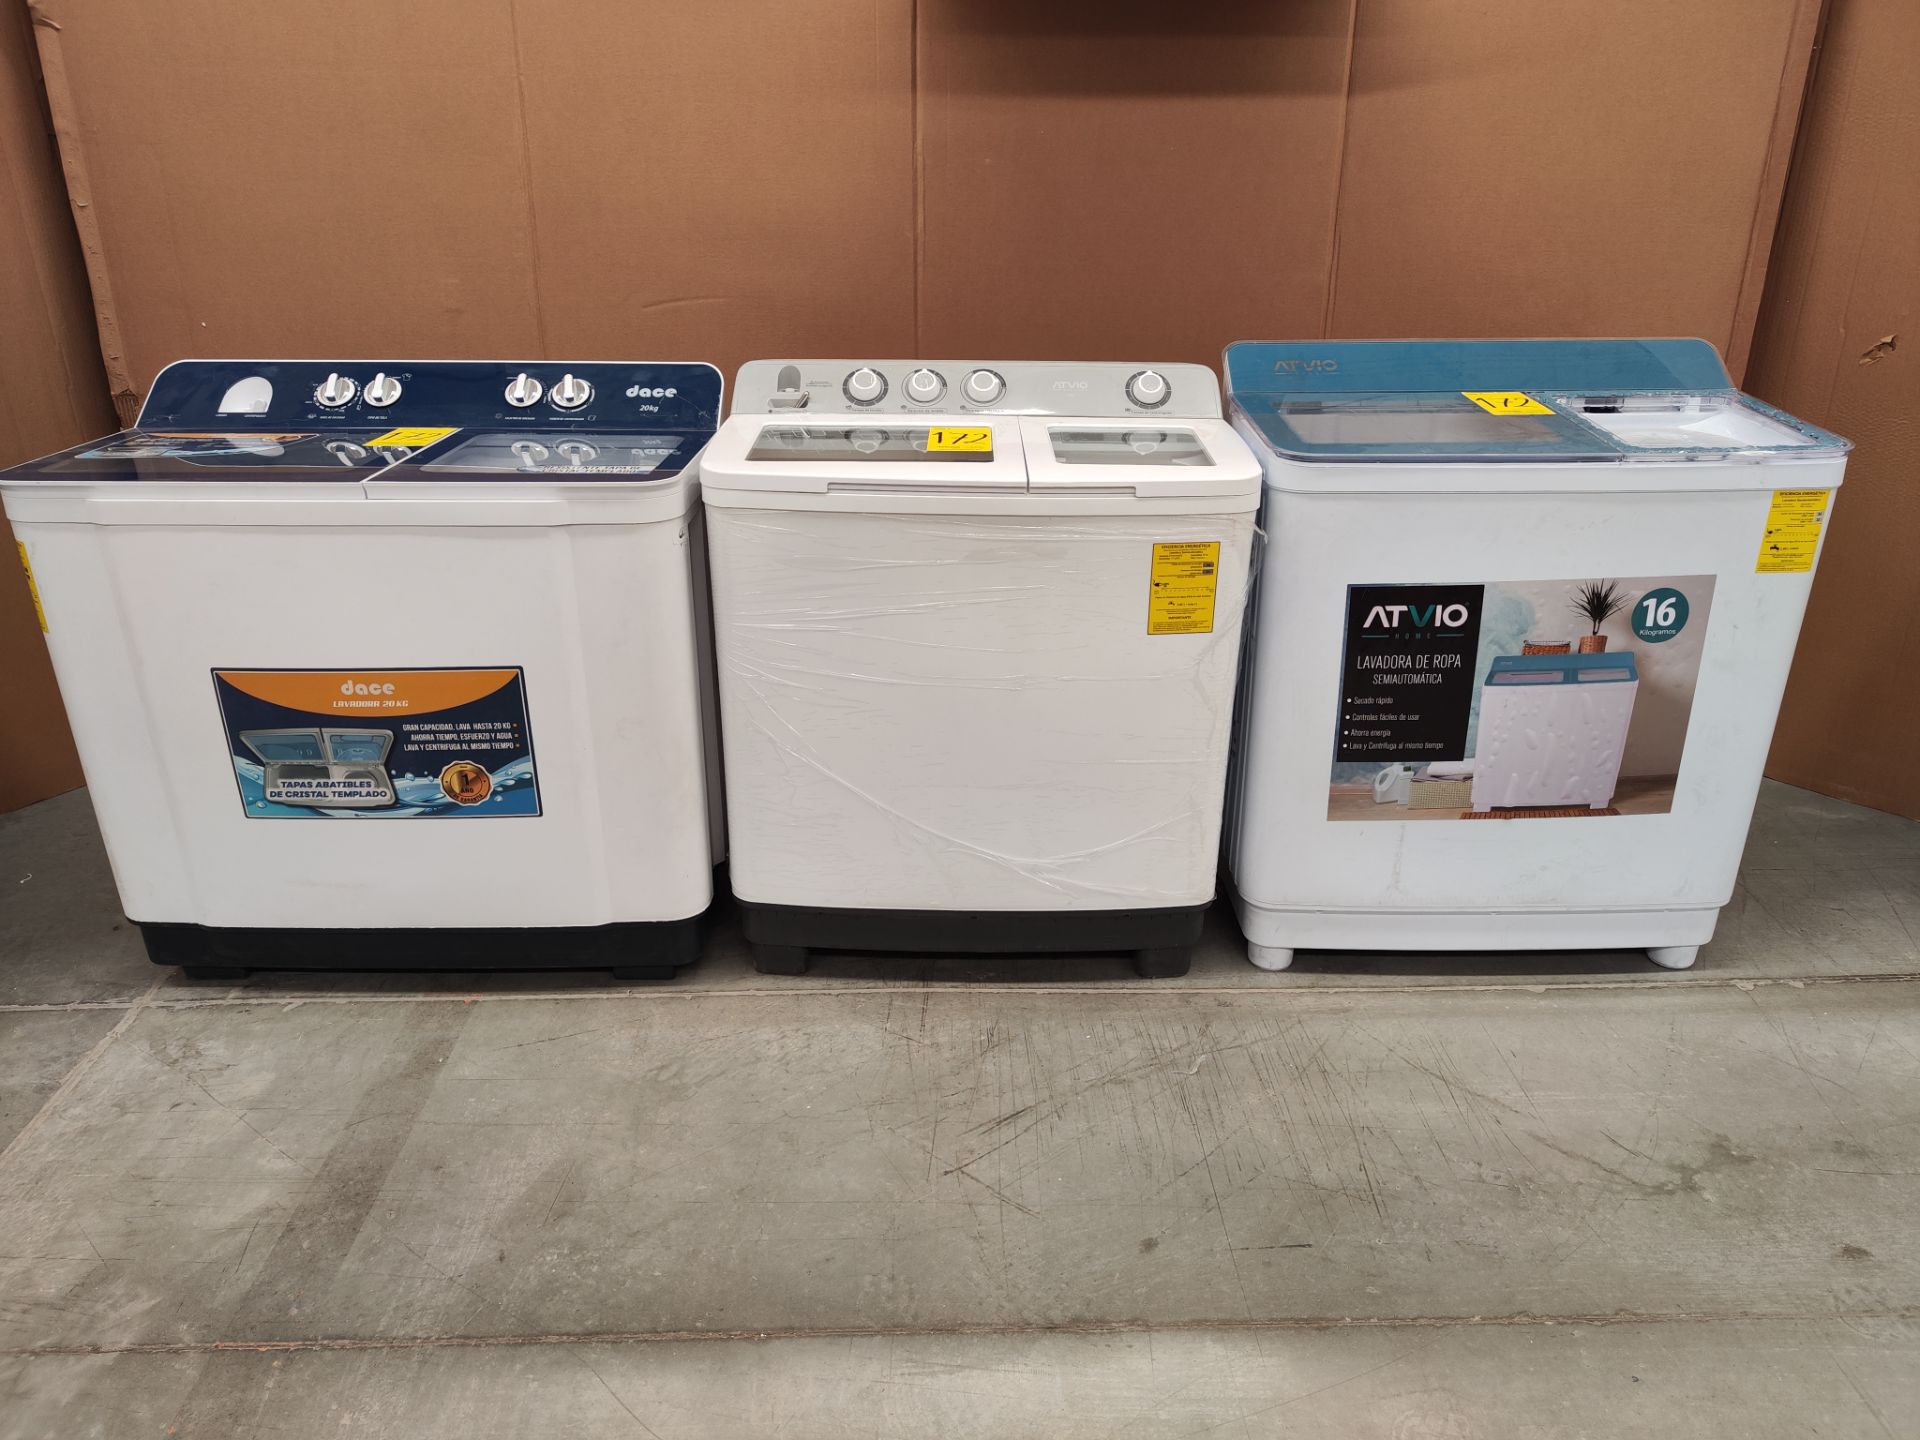 Lote de 3 lavadoras contiene: 1 lavadora de 20 KG marca DACE, Modelo LS2002C, Serie 08569, Color BL